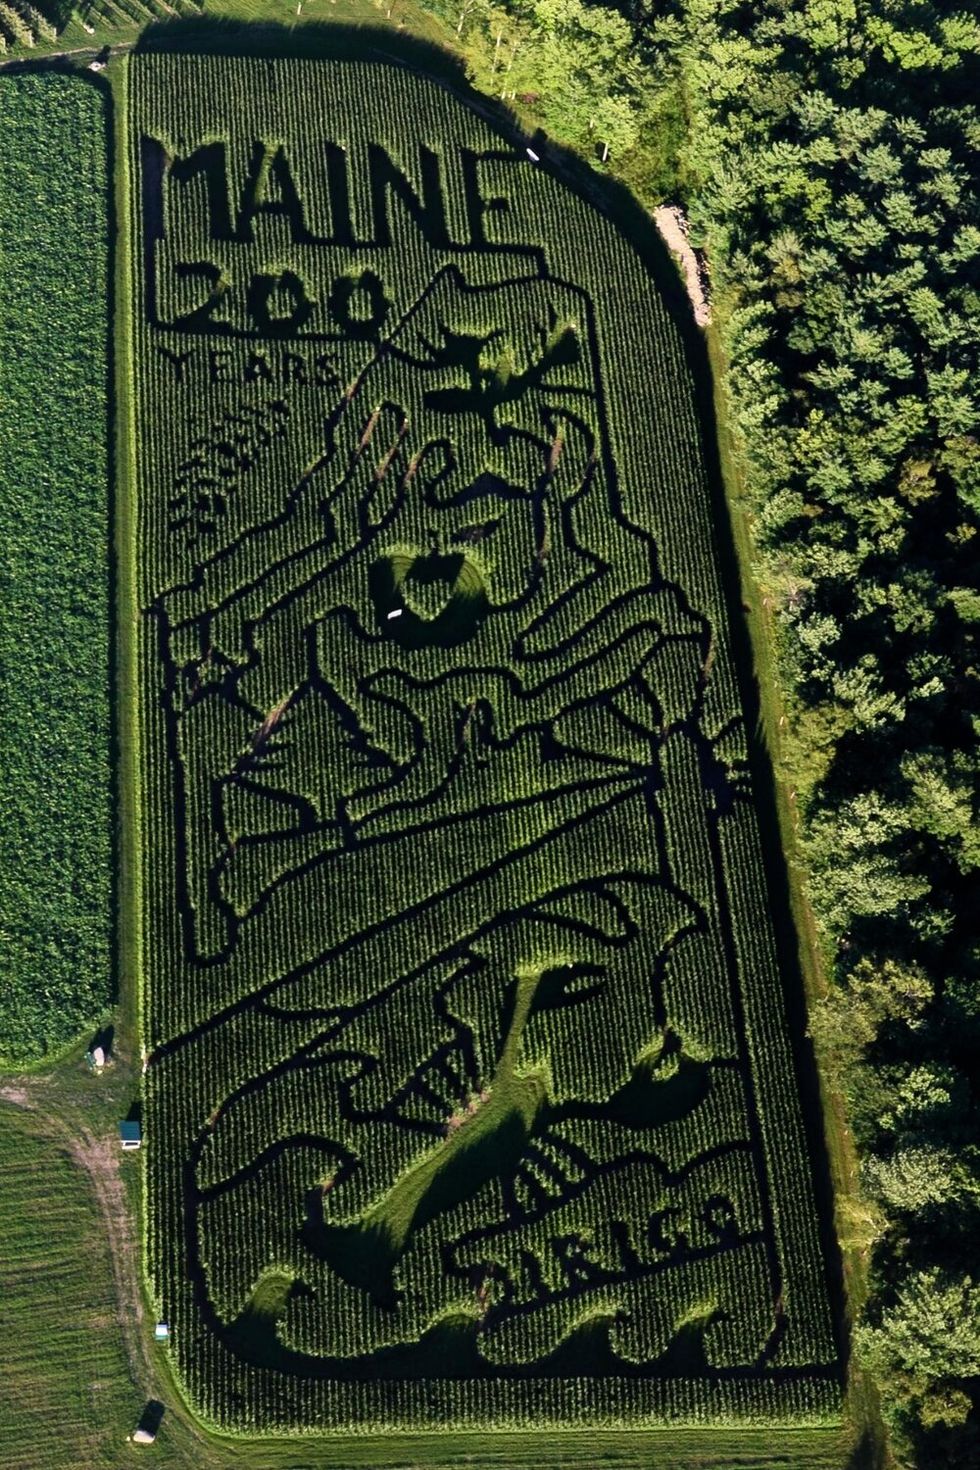 corn maze near me